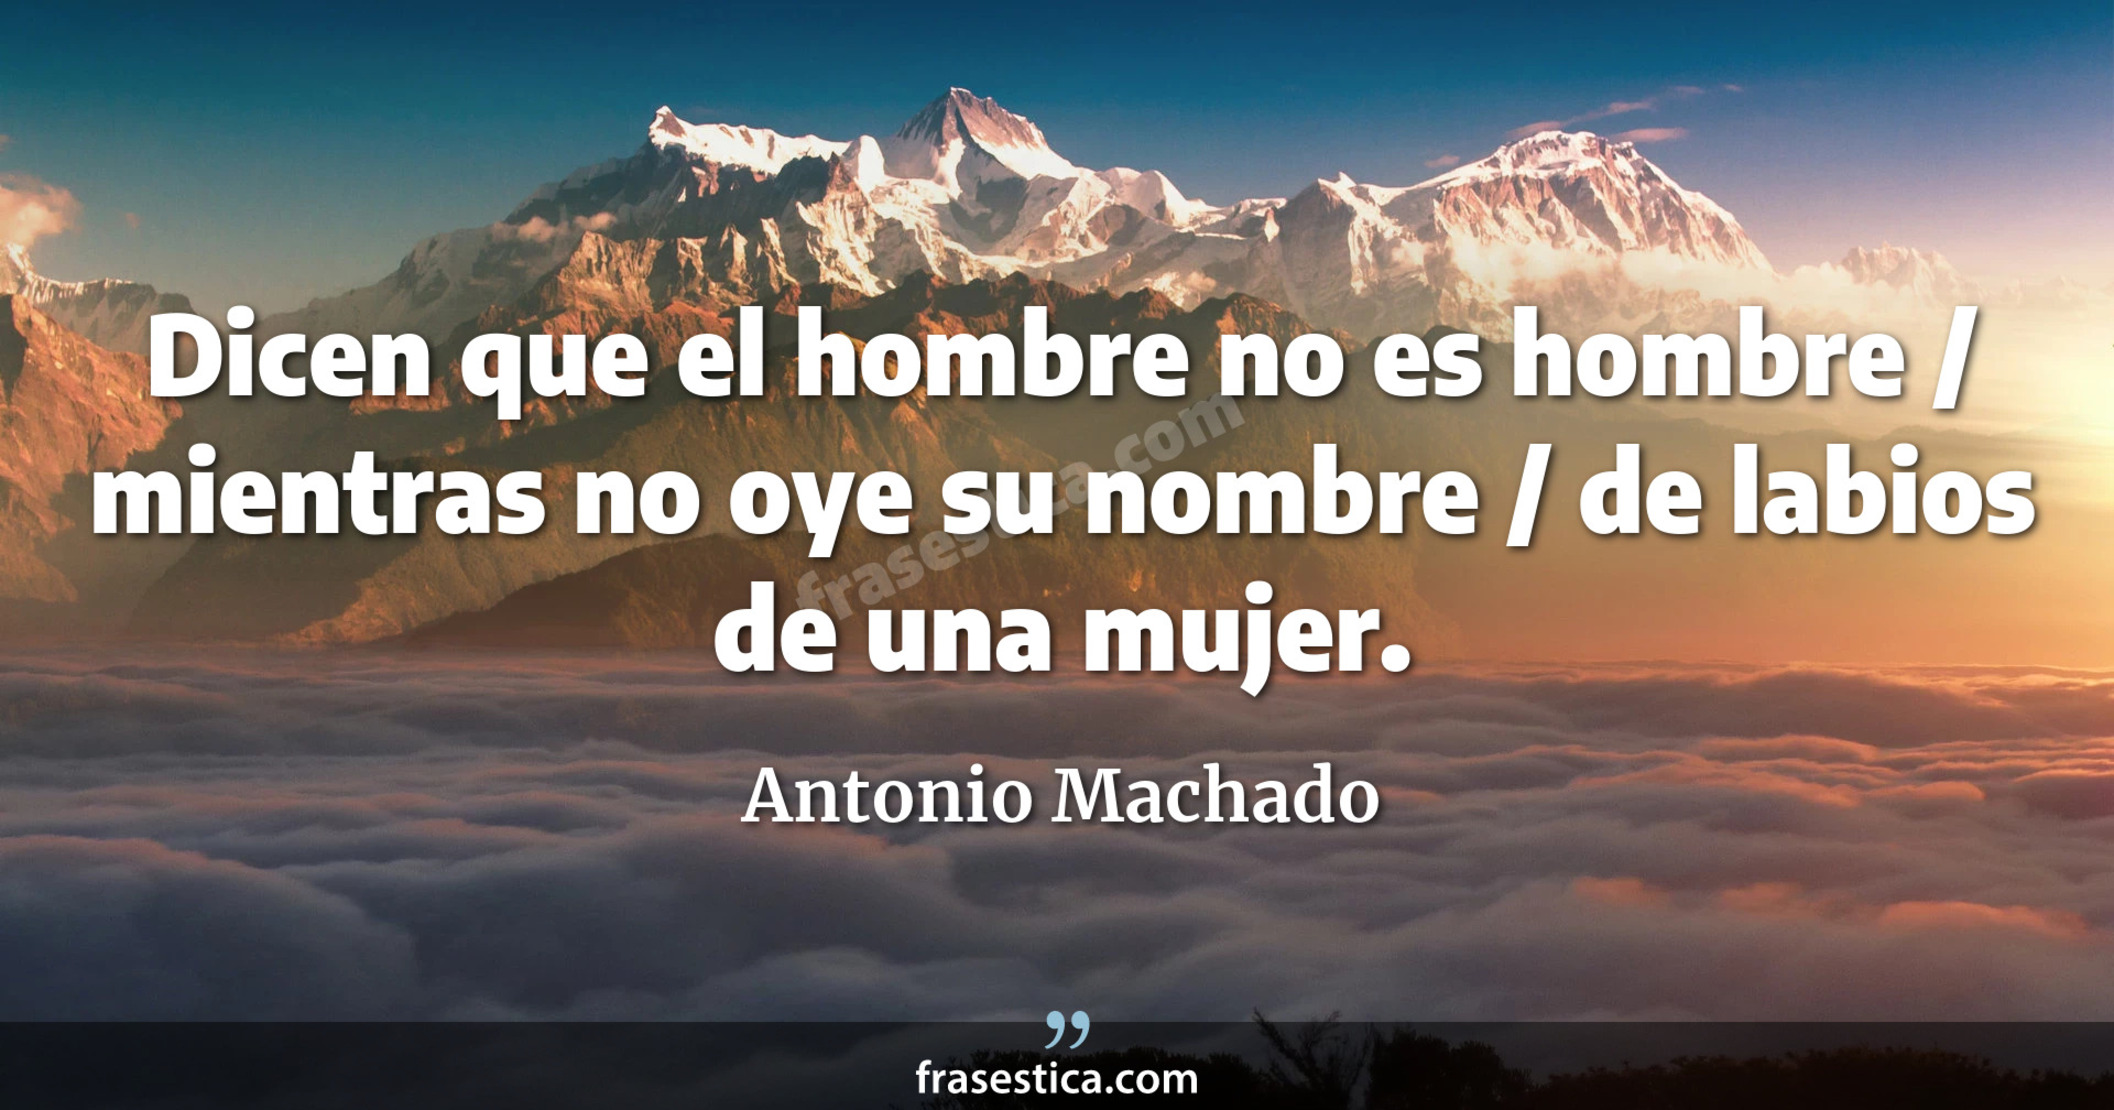 Dicen que el hombre no es hombre / mientras no oye su nombre / de labios de una mujer. - Antonio Machado